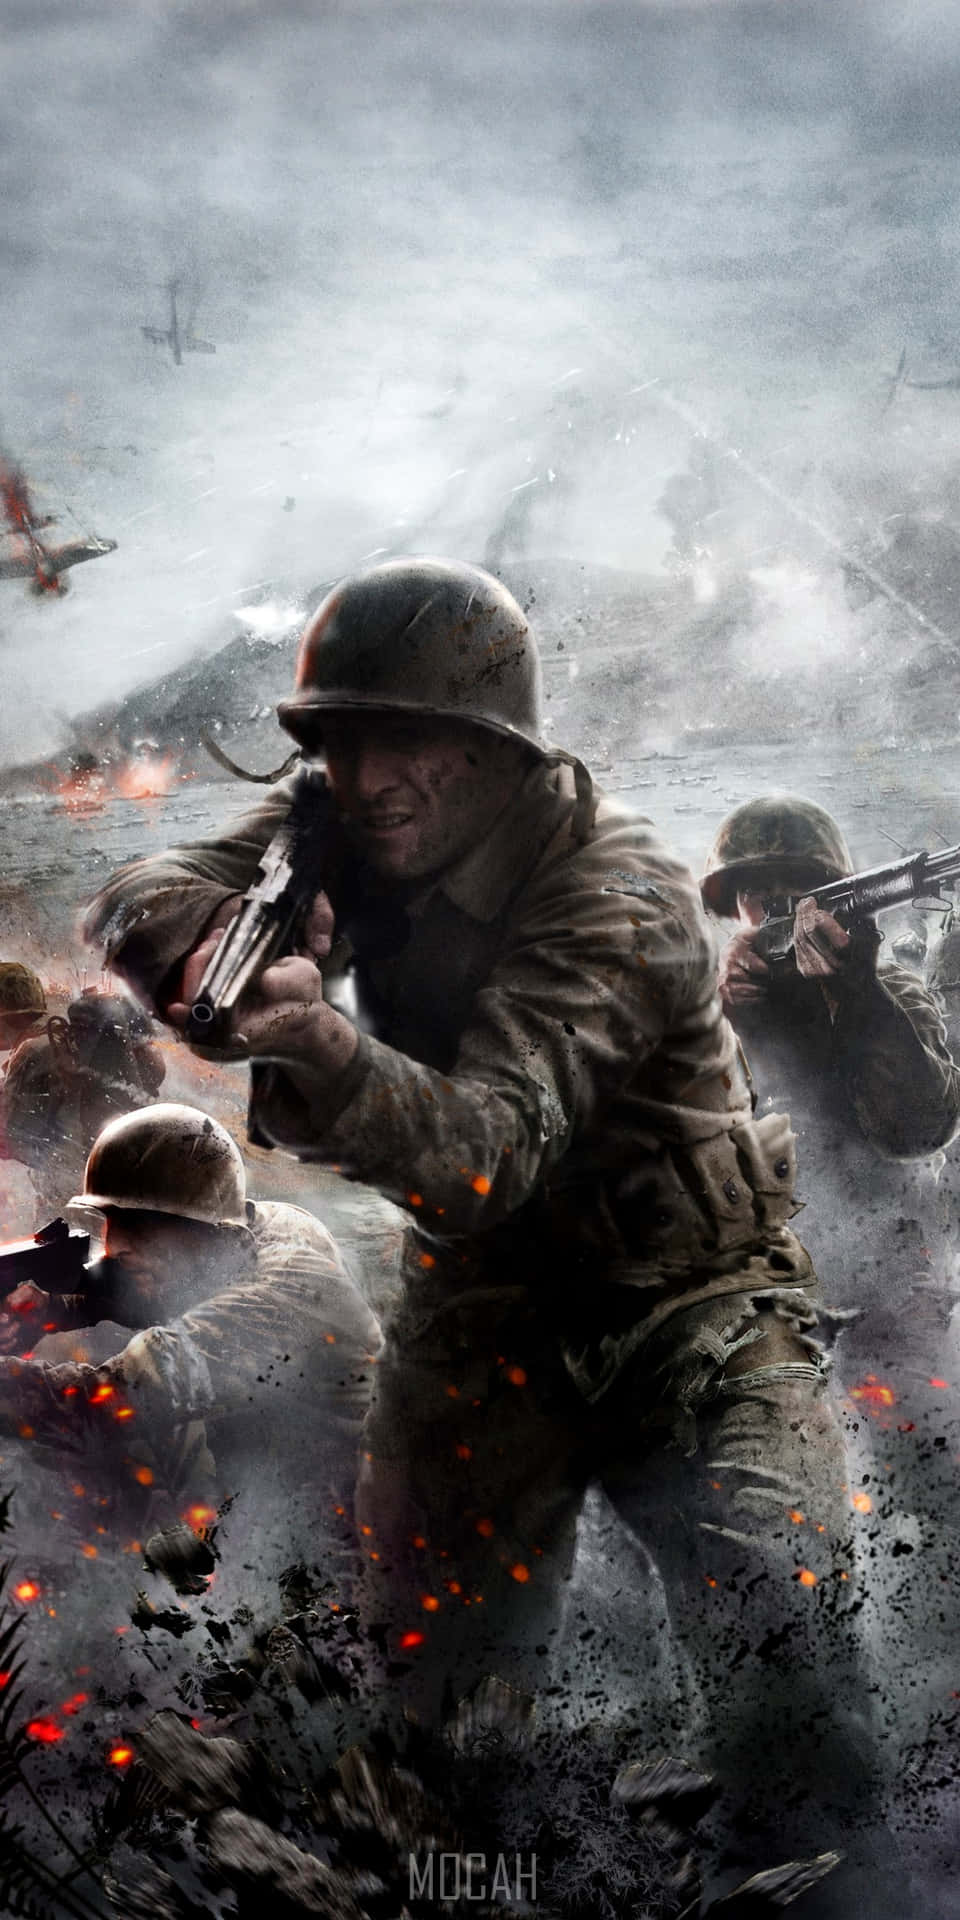 Callof Duty: Modern Warfare Wallpaper